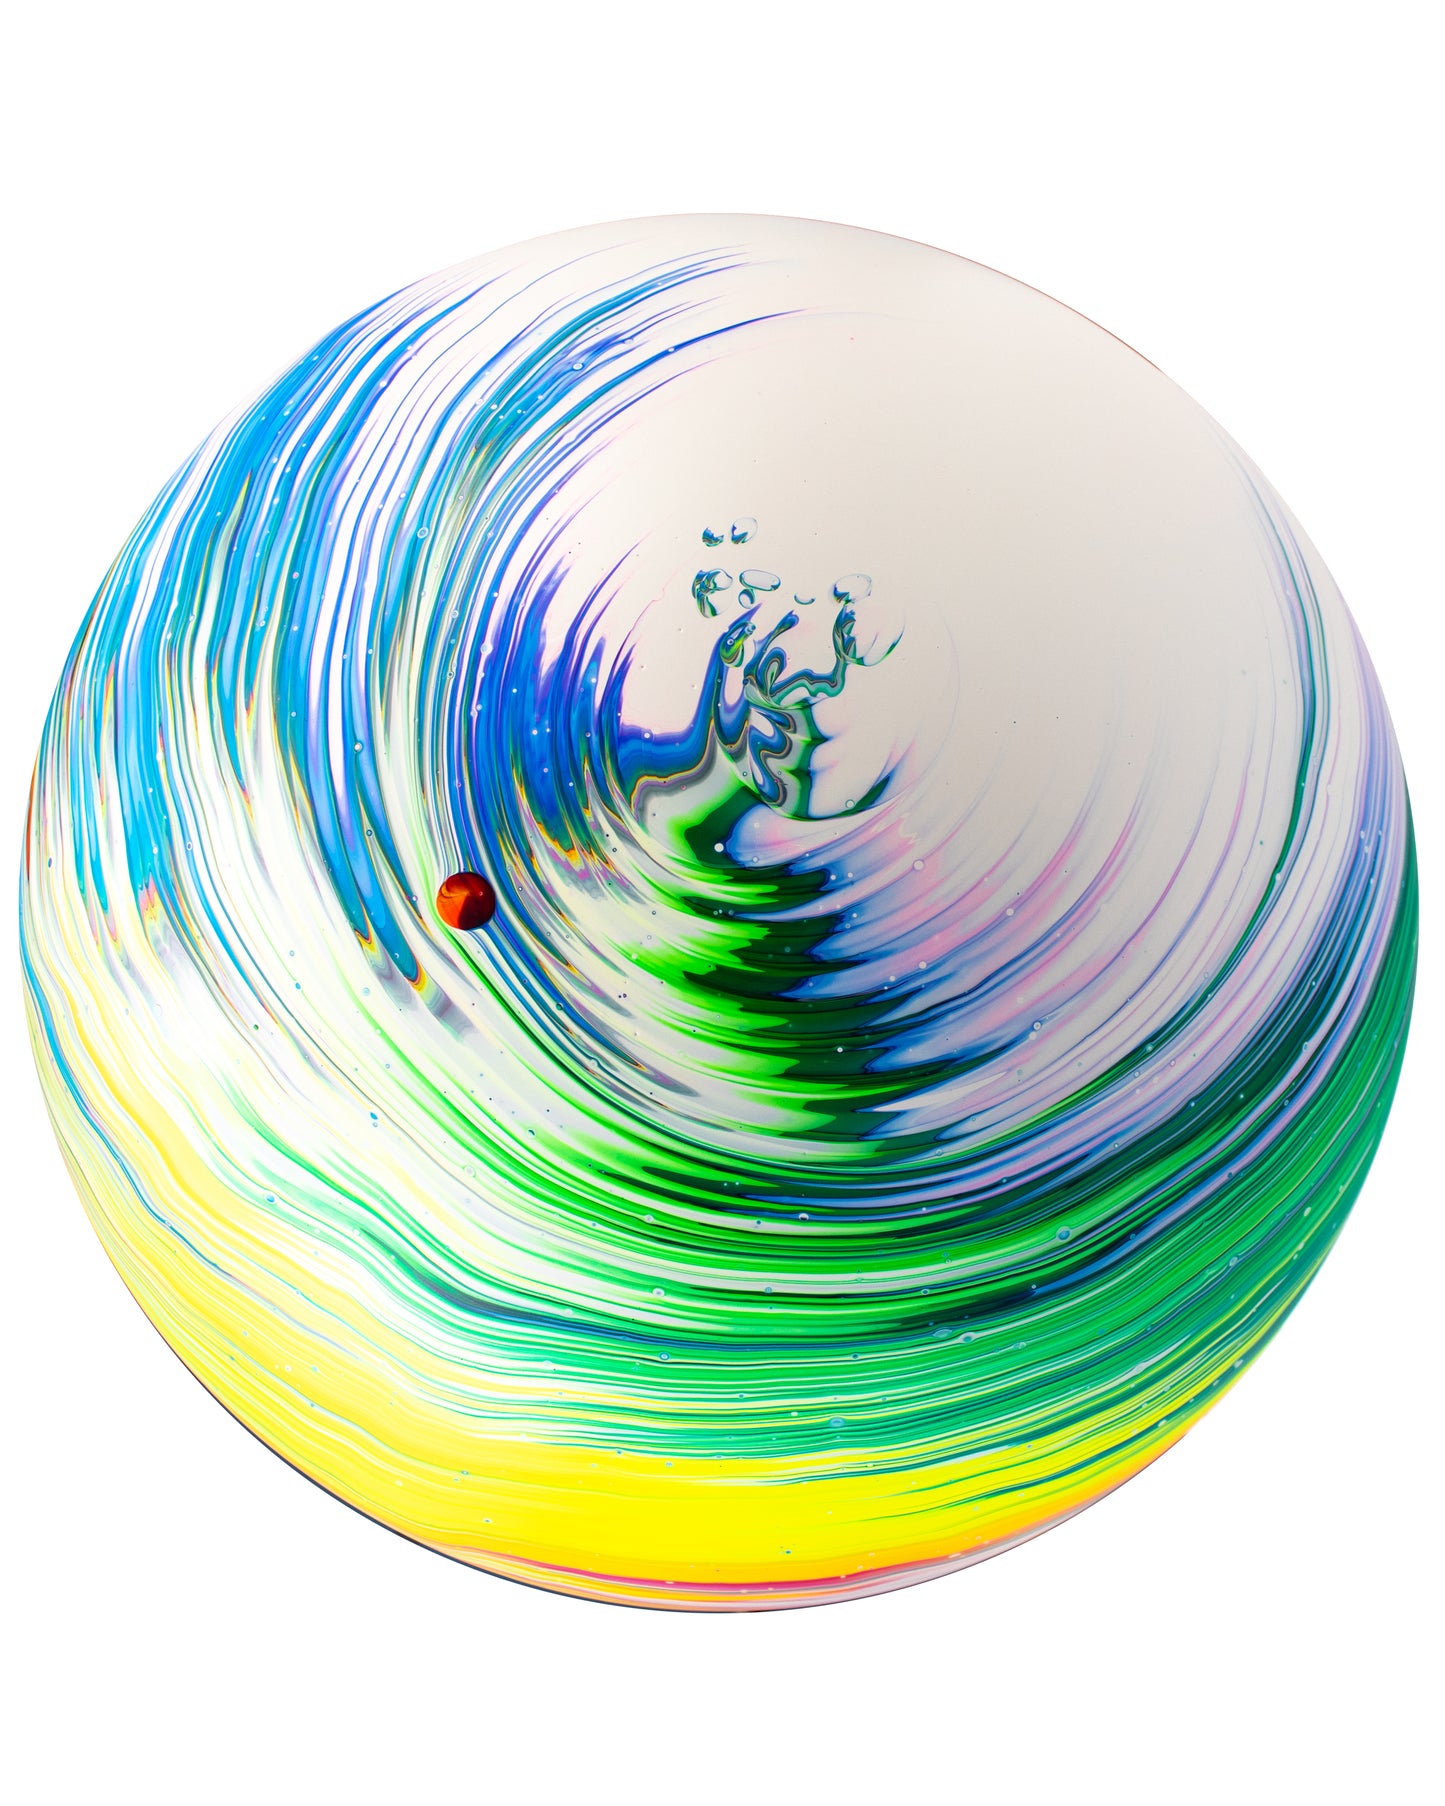 Sphere of Sedeq